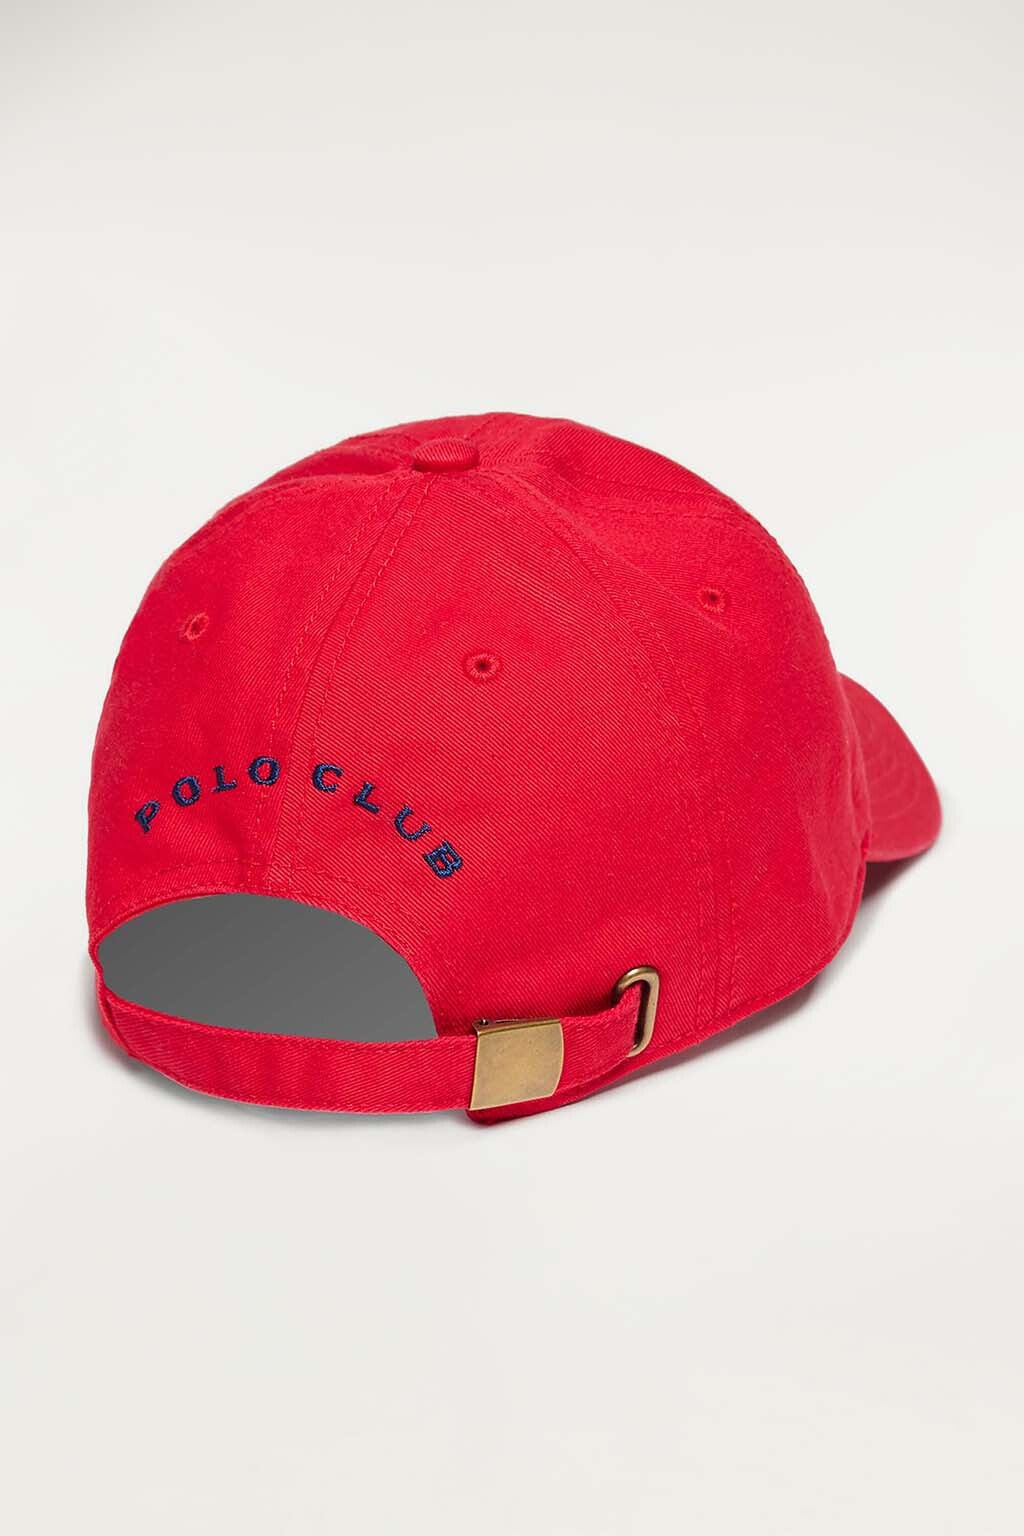 Gorra roja con logo bordado a color contraste – Polo Club